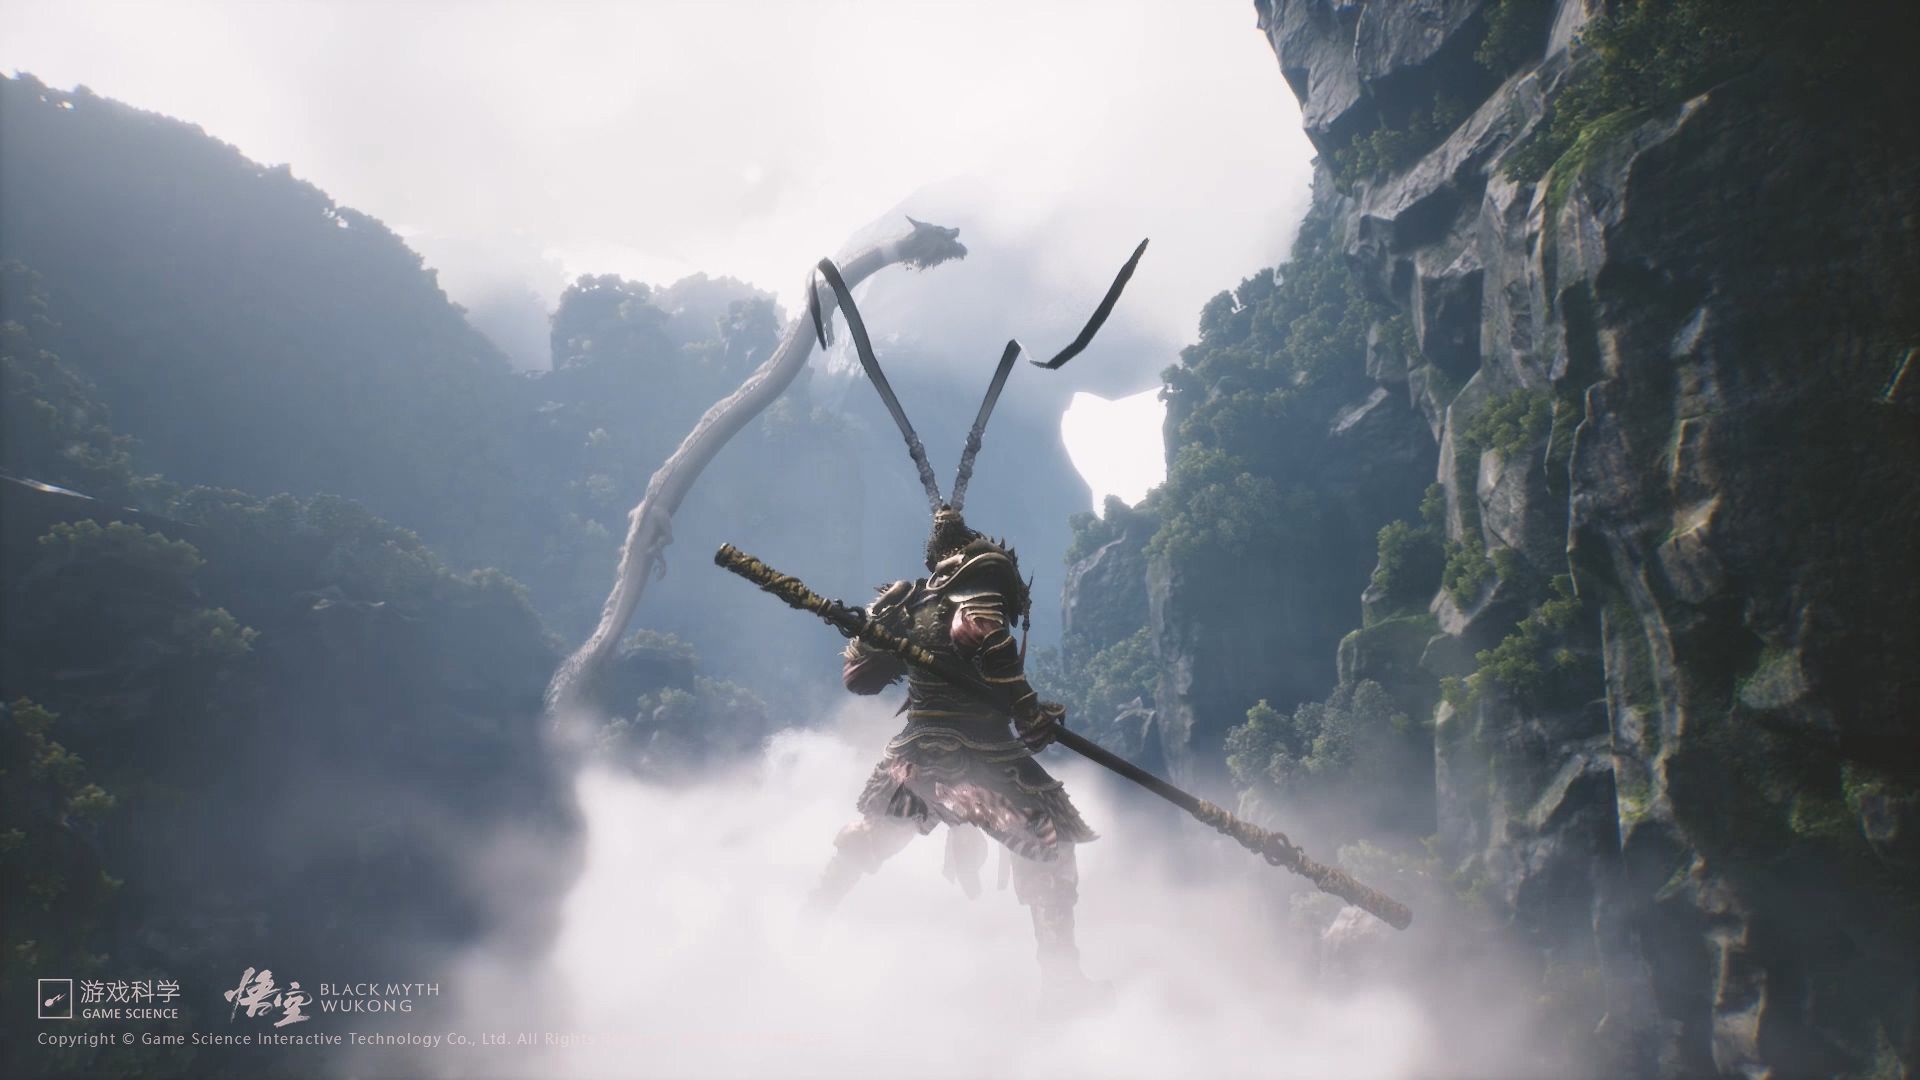 #Das imposante Black Myth: Wukong meldet sich mit einem amüsanten Kurzfilm zurück